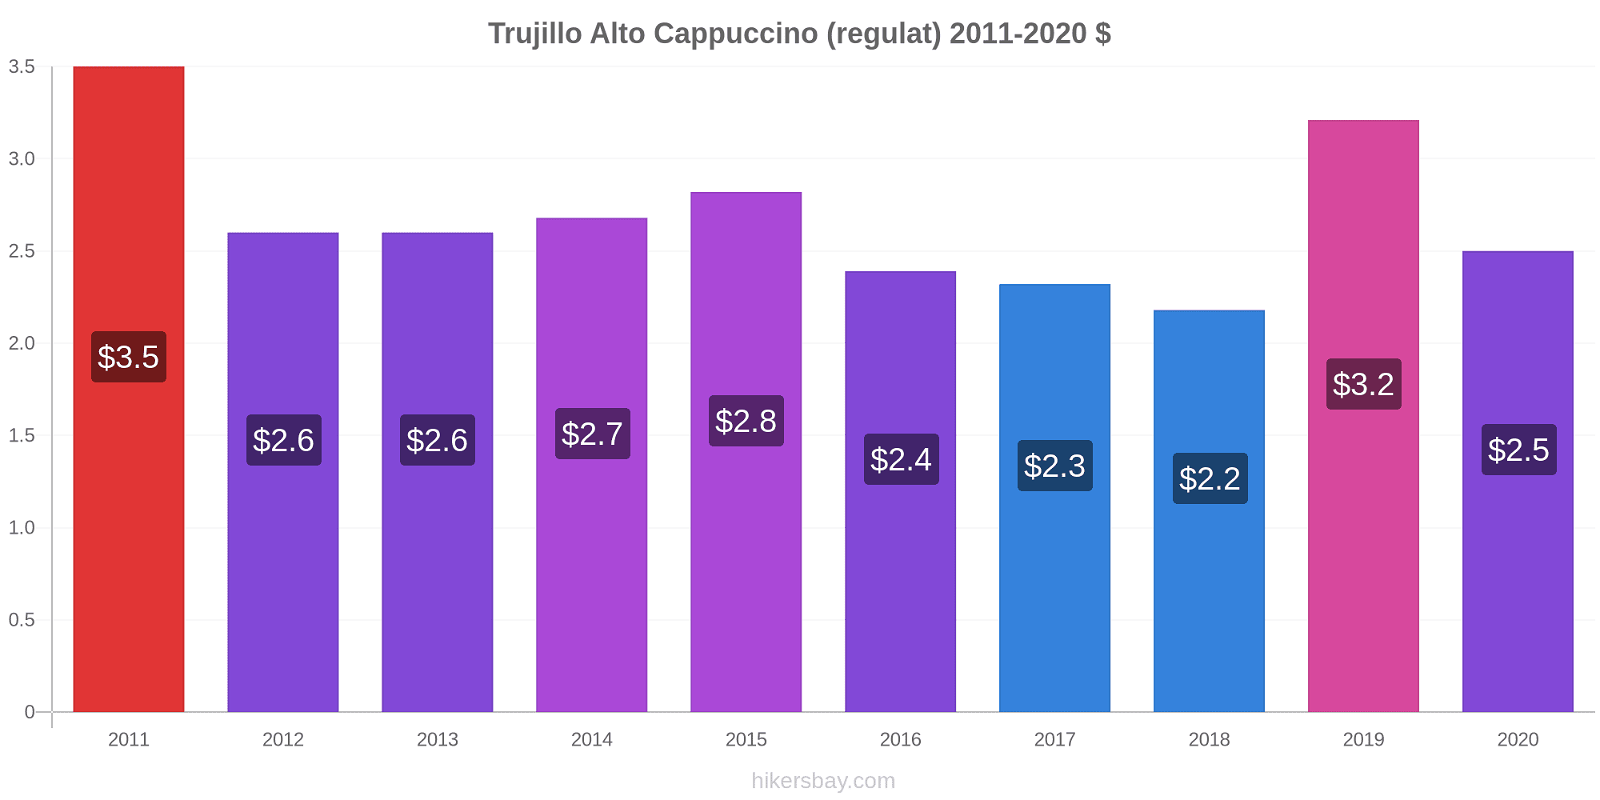 Trujillo Alto modificări de preț Cappuccino (regulat) hikersbay.com